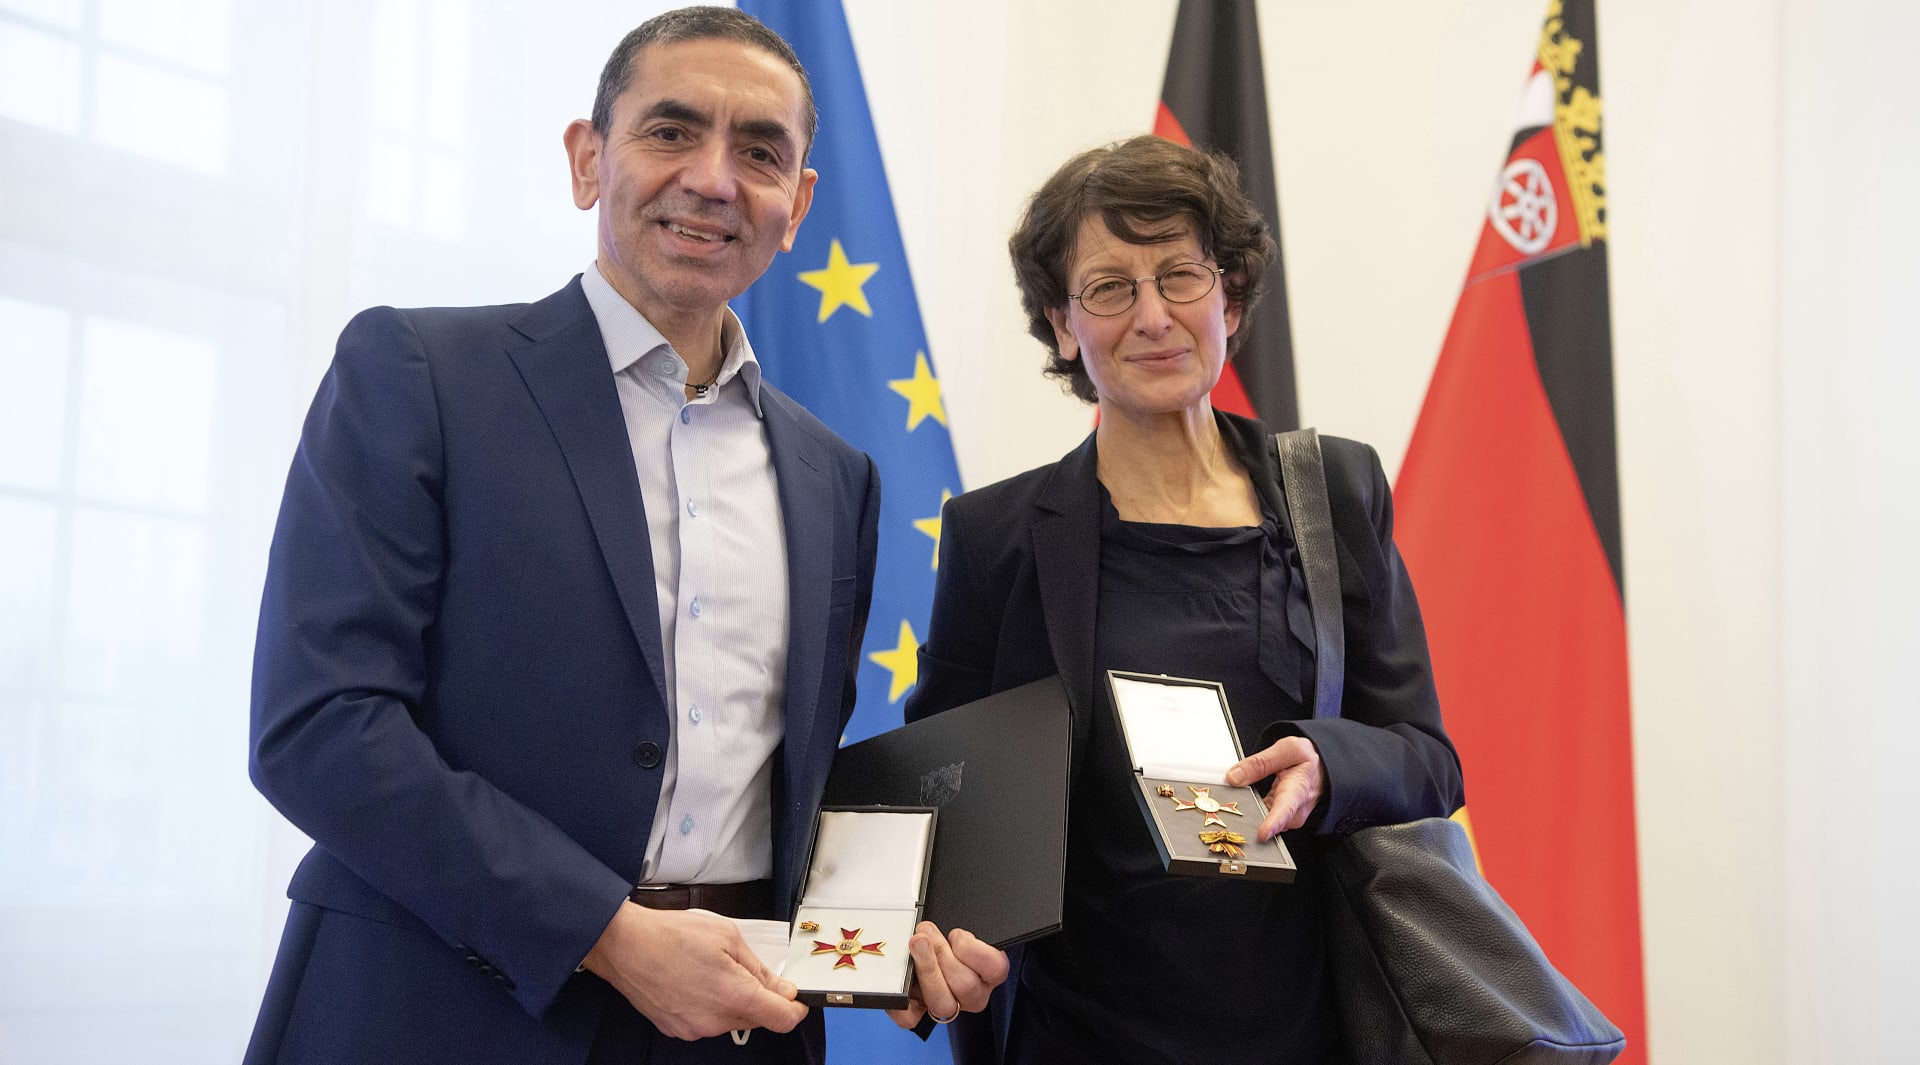 Zakladatelé společnosti BioNTech Ugur Sahin a jeho manželka Özlem Türeciová, kteří vyvinuli vakcínu proti COVID-19, přebrali v lednu 2022 na kancléřství v Mohuči Řád za zásluhy německé spolkové země Porýní-Falc.